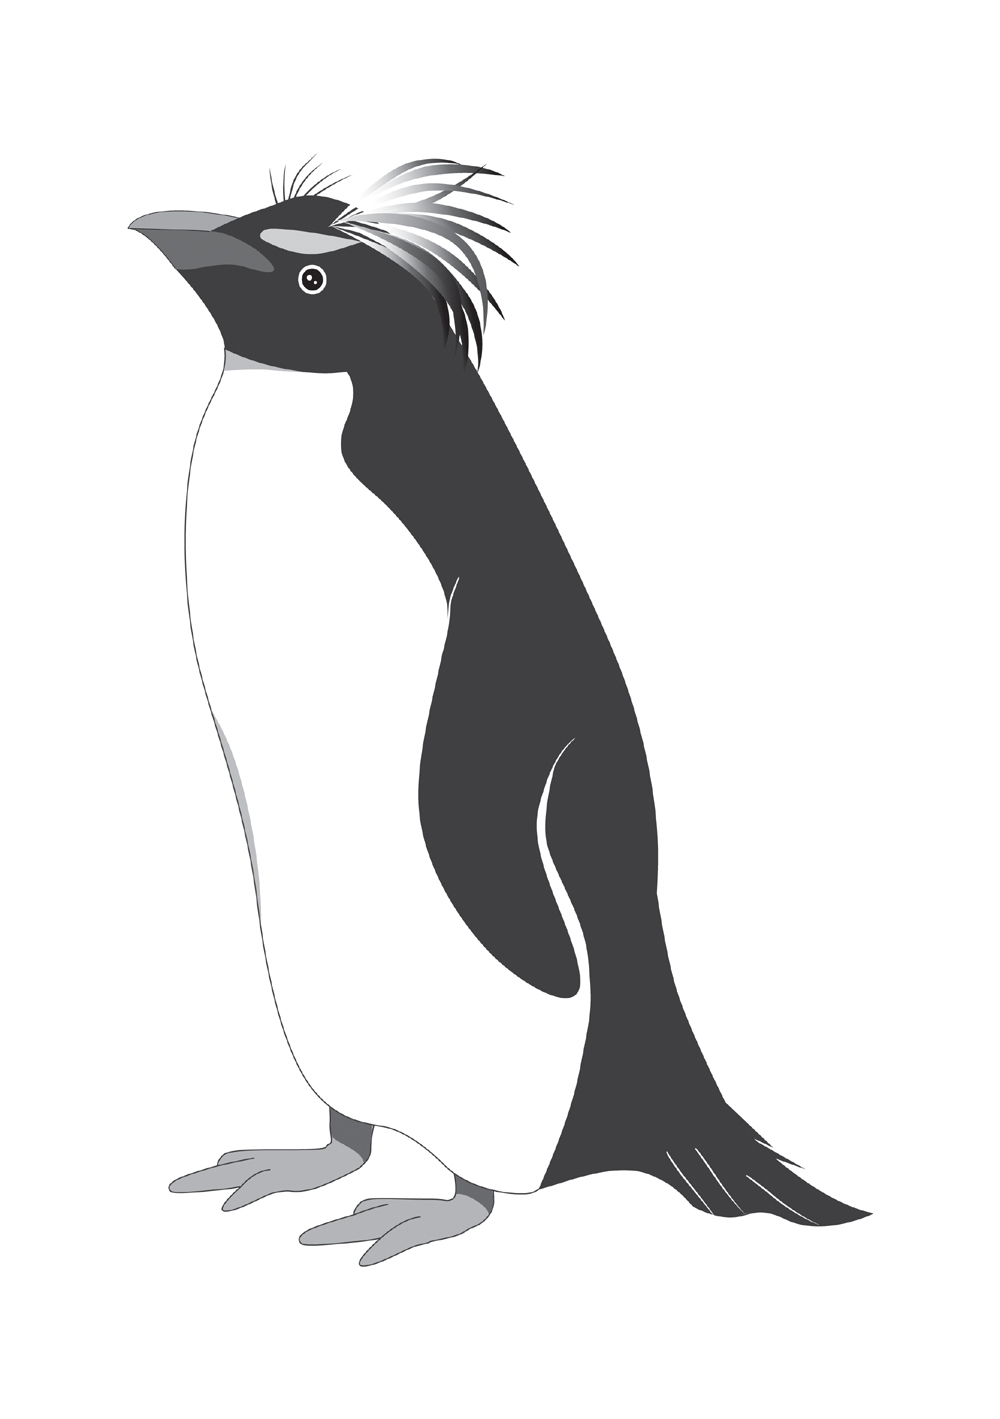 ここからダウンロード ペンギン イラスト 白黒 無料のイラストやかわいいテンプレート